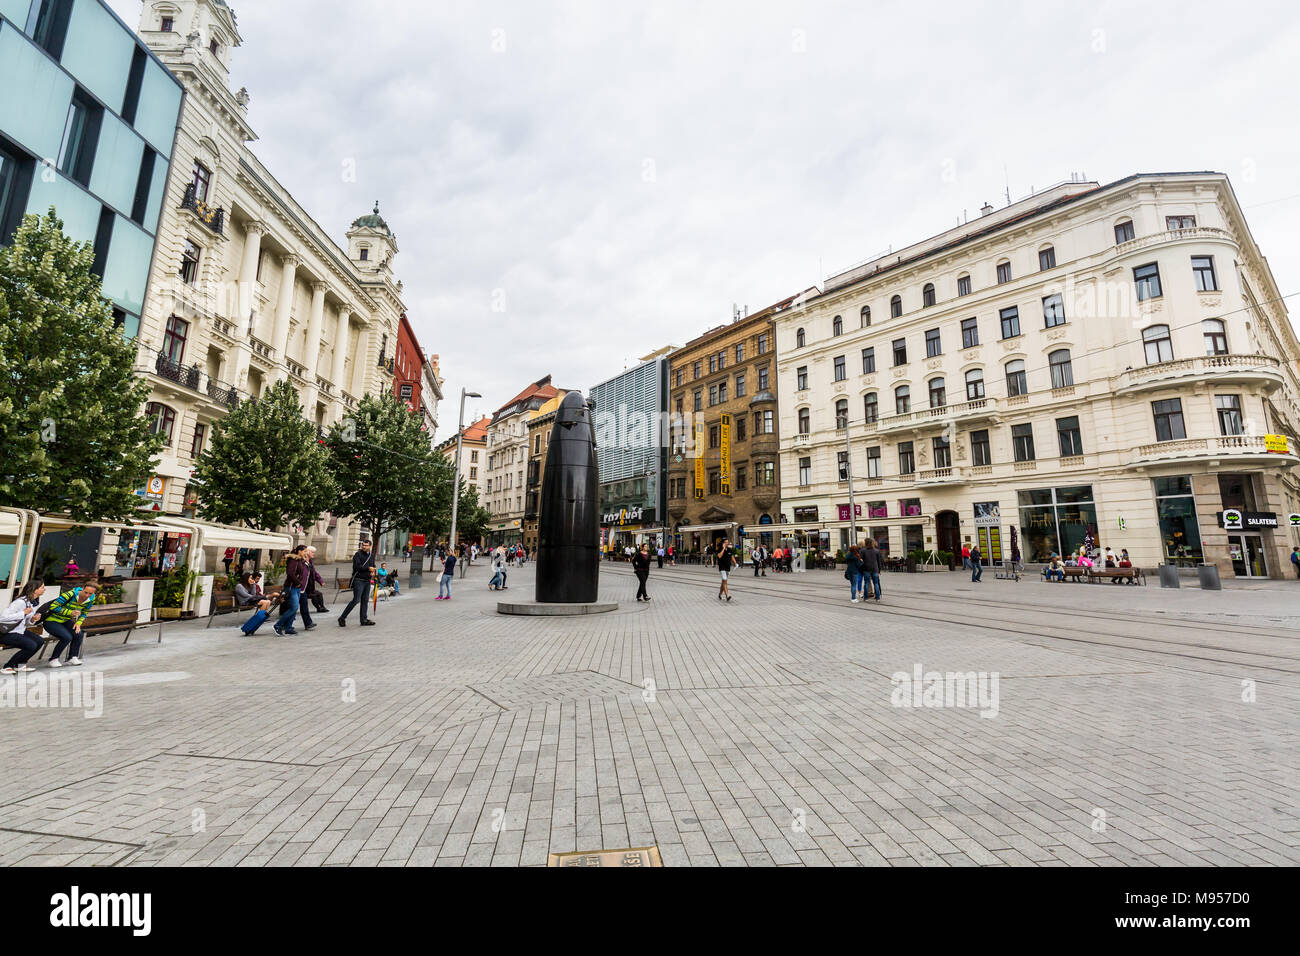 BRNO, République tchèque - 17 juin 2017 : vue sur le centre-ville et de la vieille ville, une partie de la ville tchèque Brno le 17 juin 2017. La deuxième plus grande ville de son i Banque D'Images